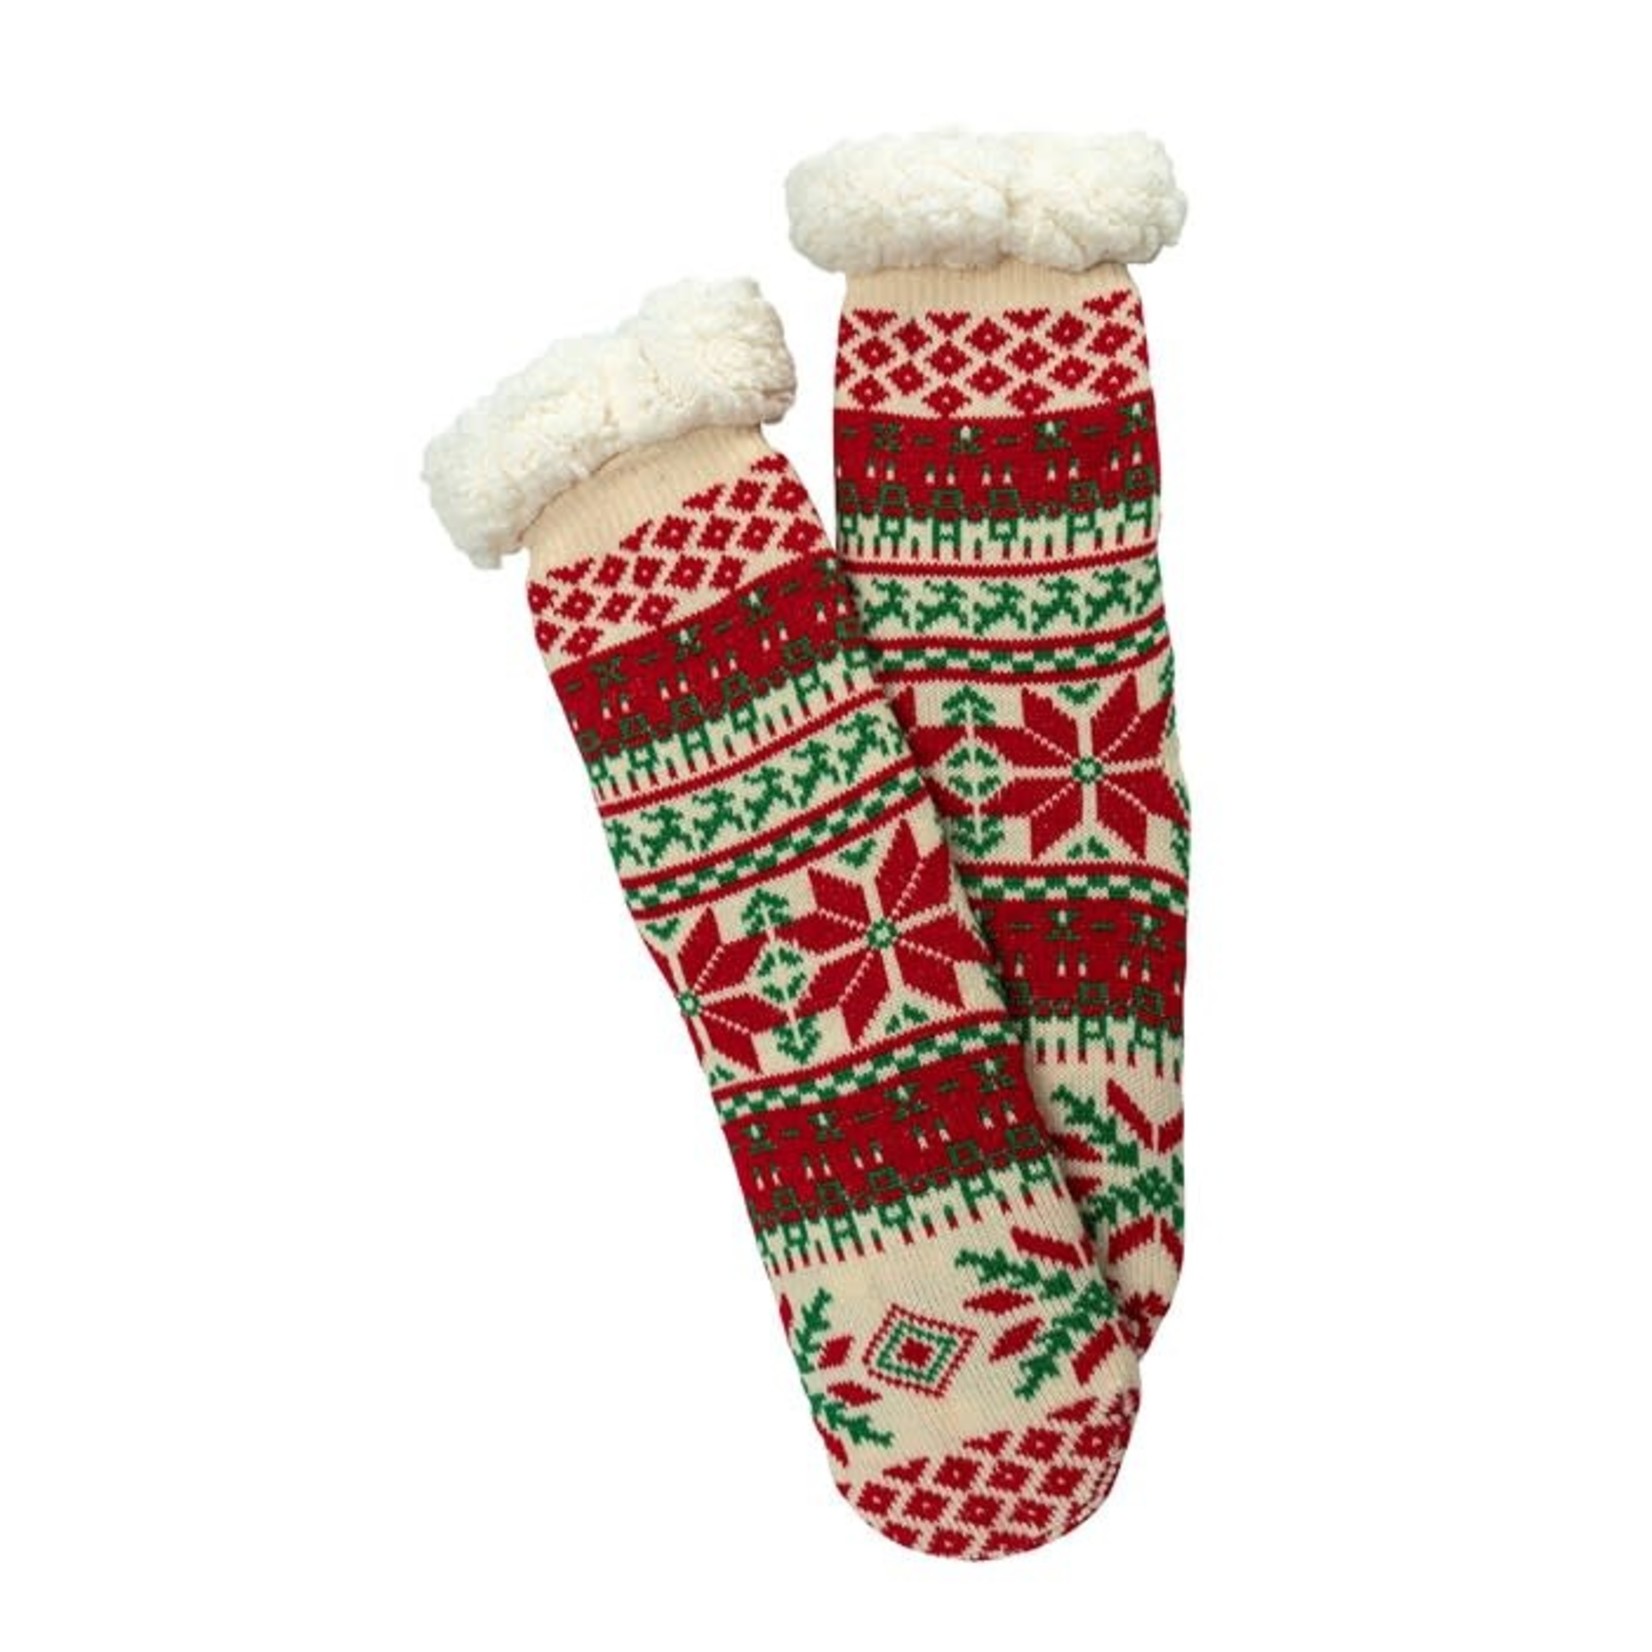 Two Left Feet Mistletoes Slipper Socks: